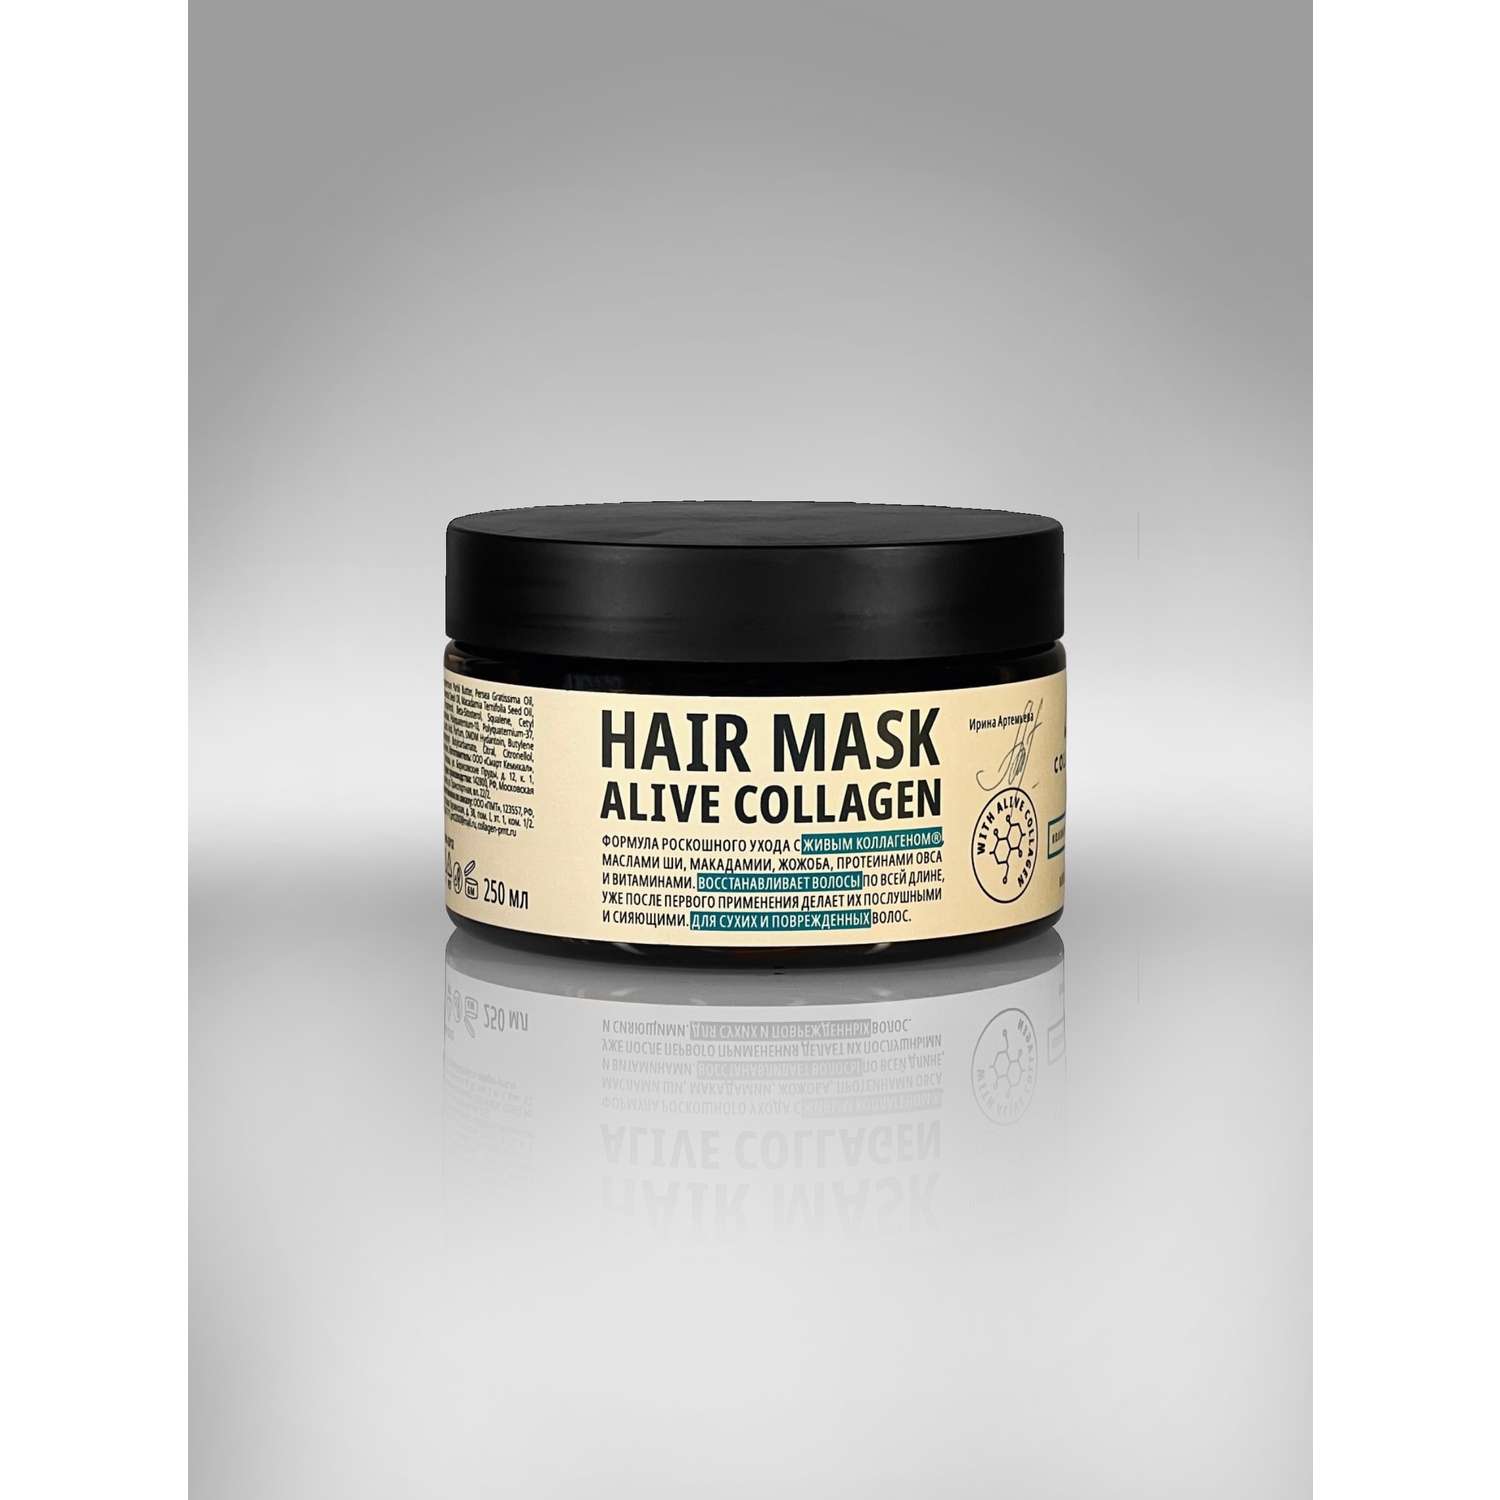 Интенсивная питательная маска COLLA GEN для волос с живым коллагеном. HAIR MASK ALIVE COLLAGEN - фото 1